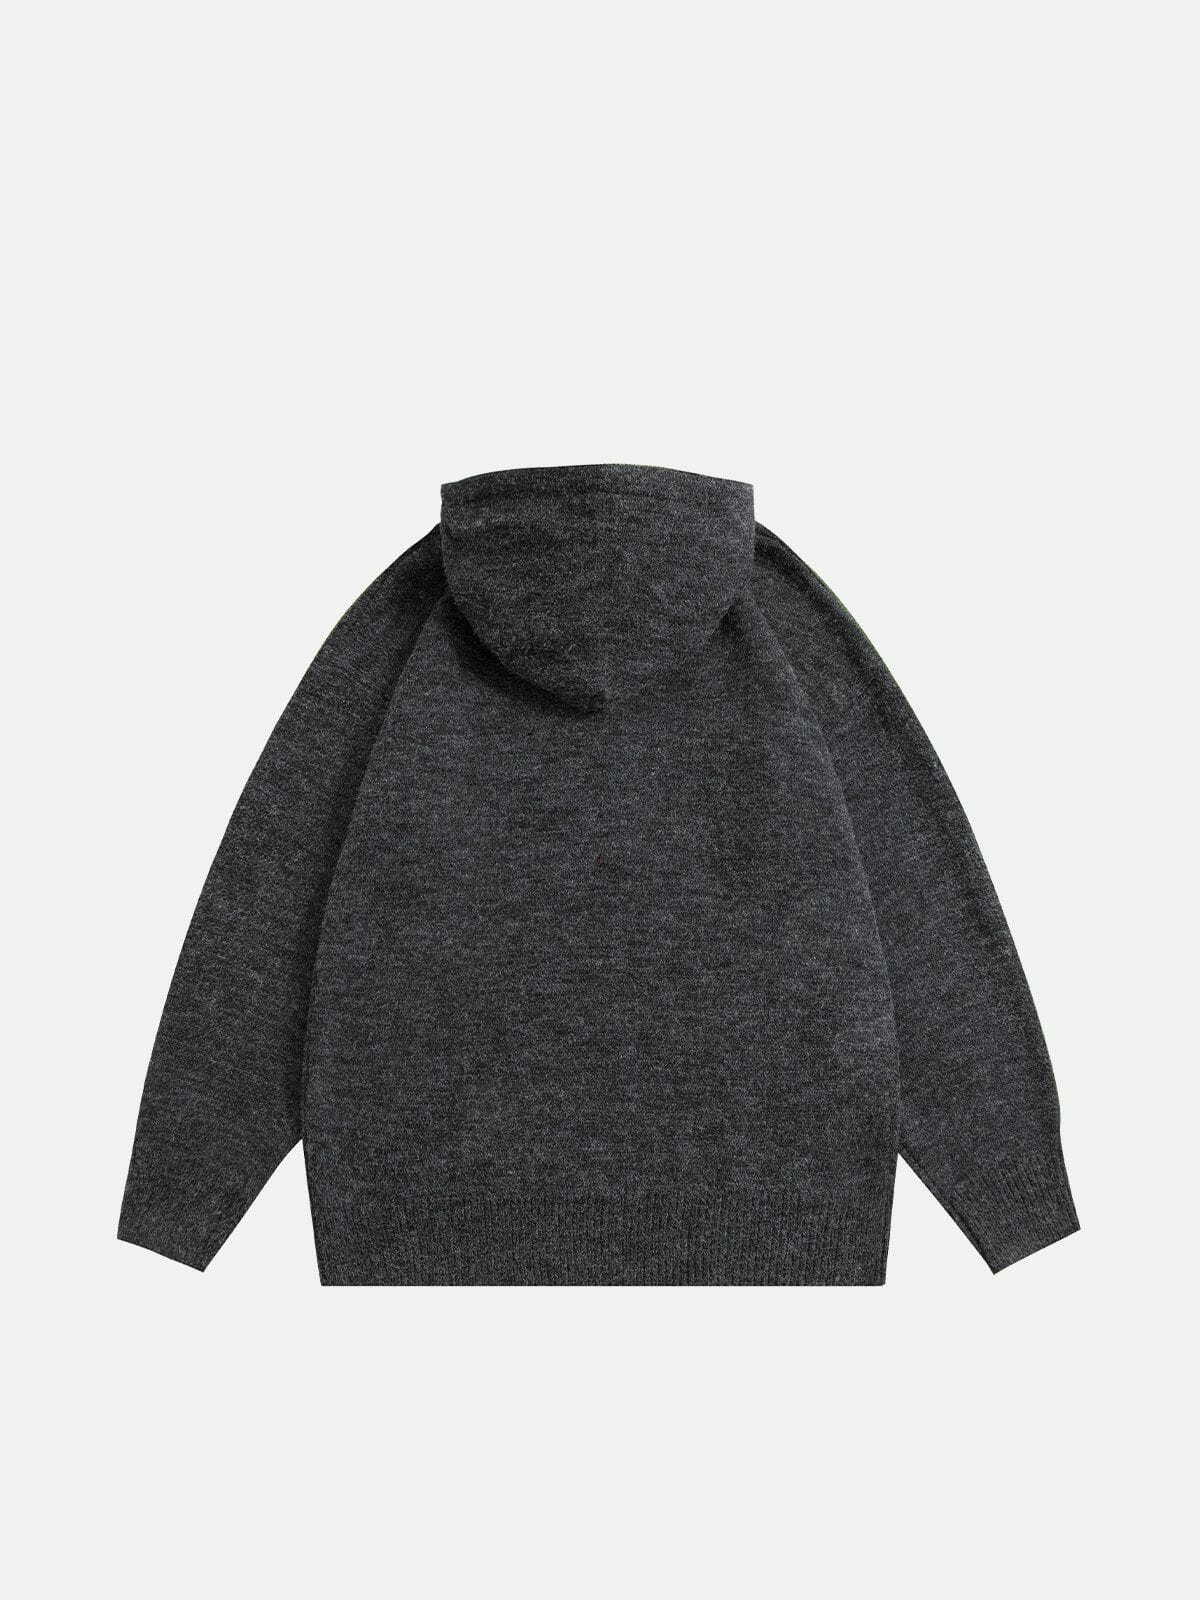 pentagram knit hoodie vintage streetwear icon 8166